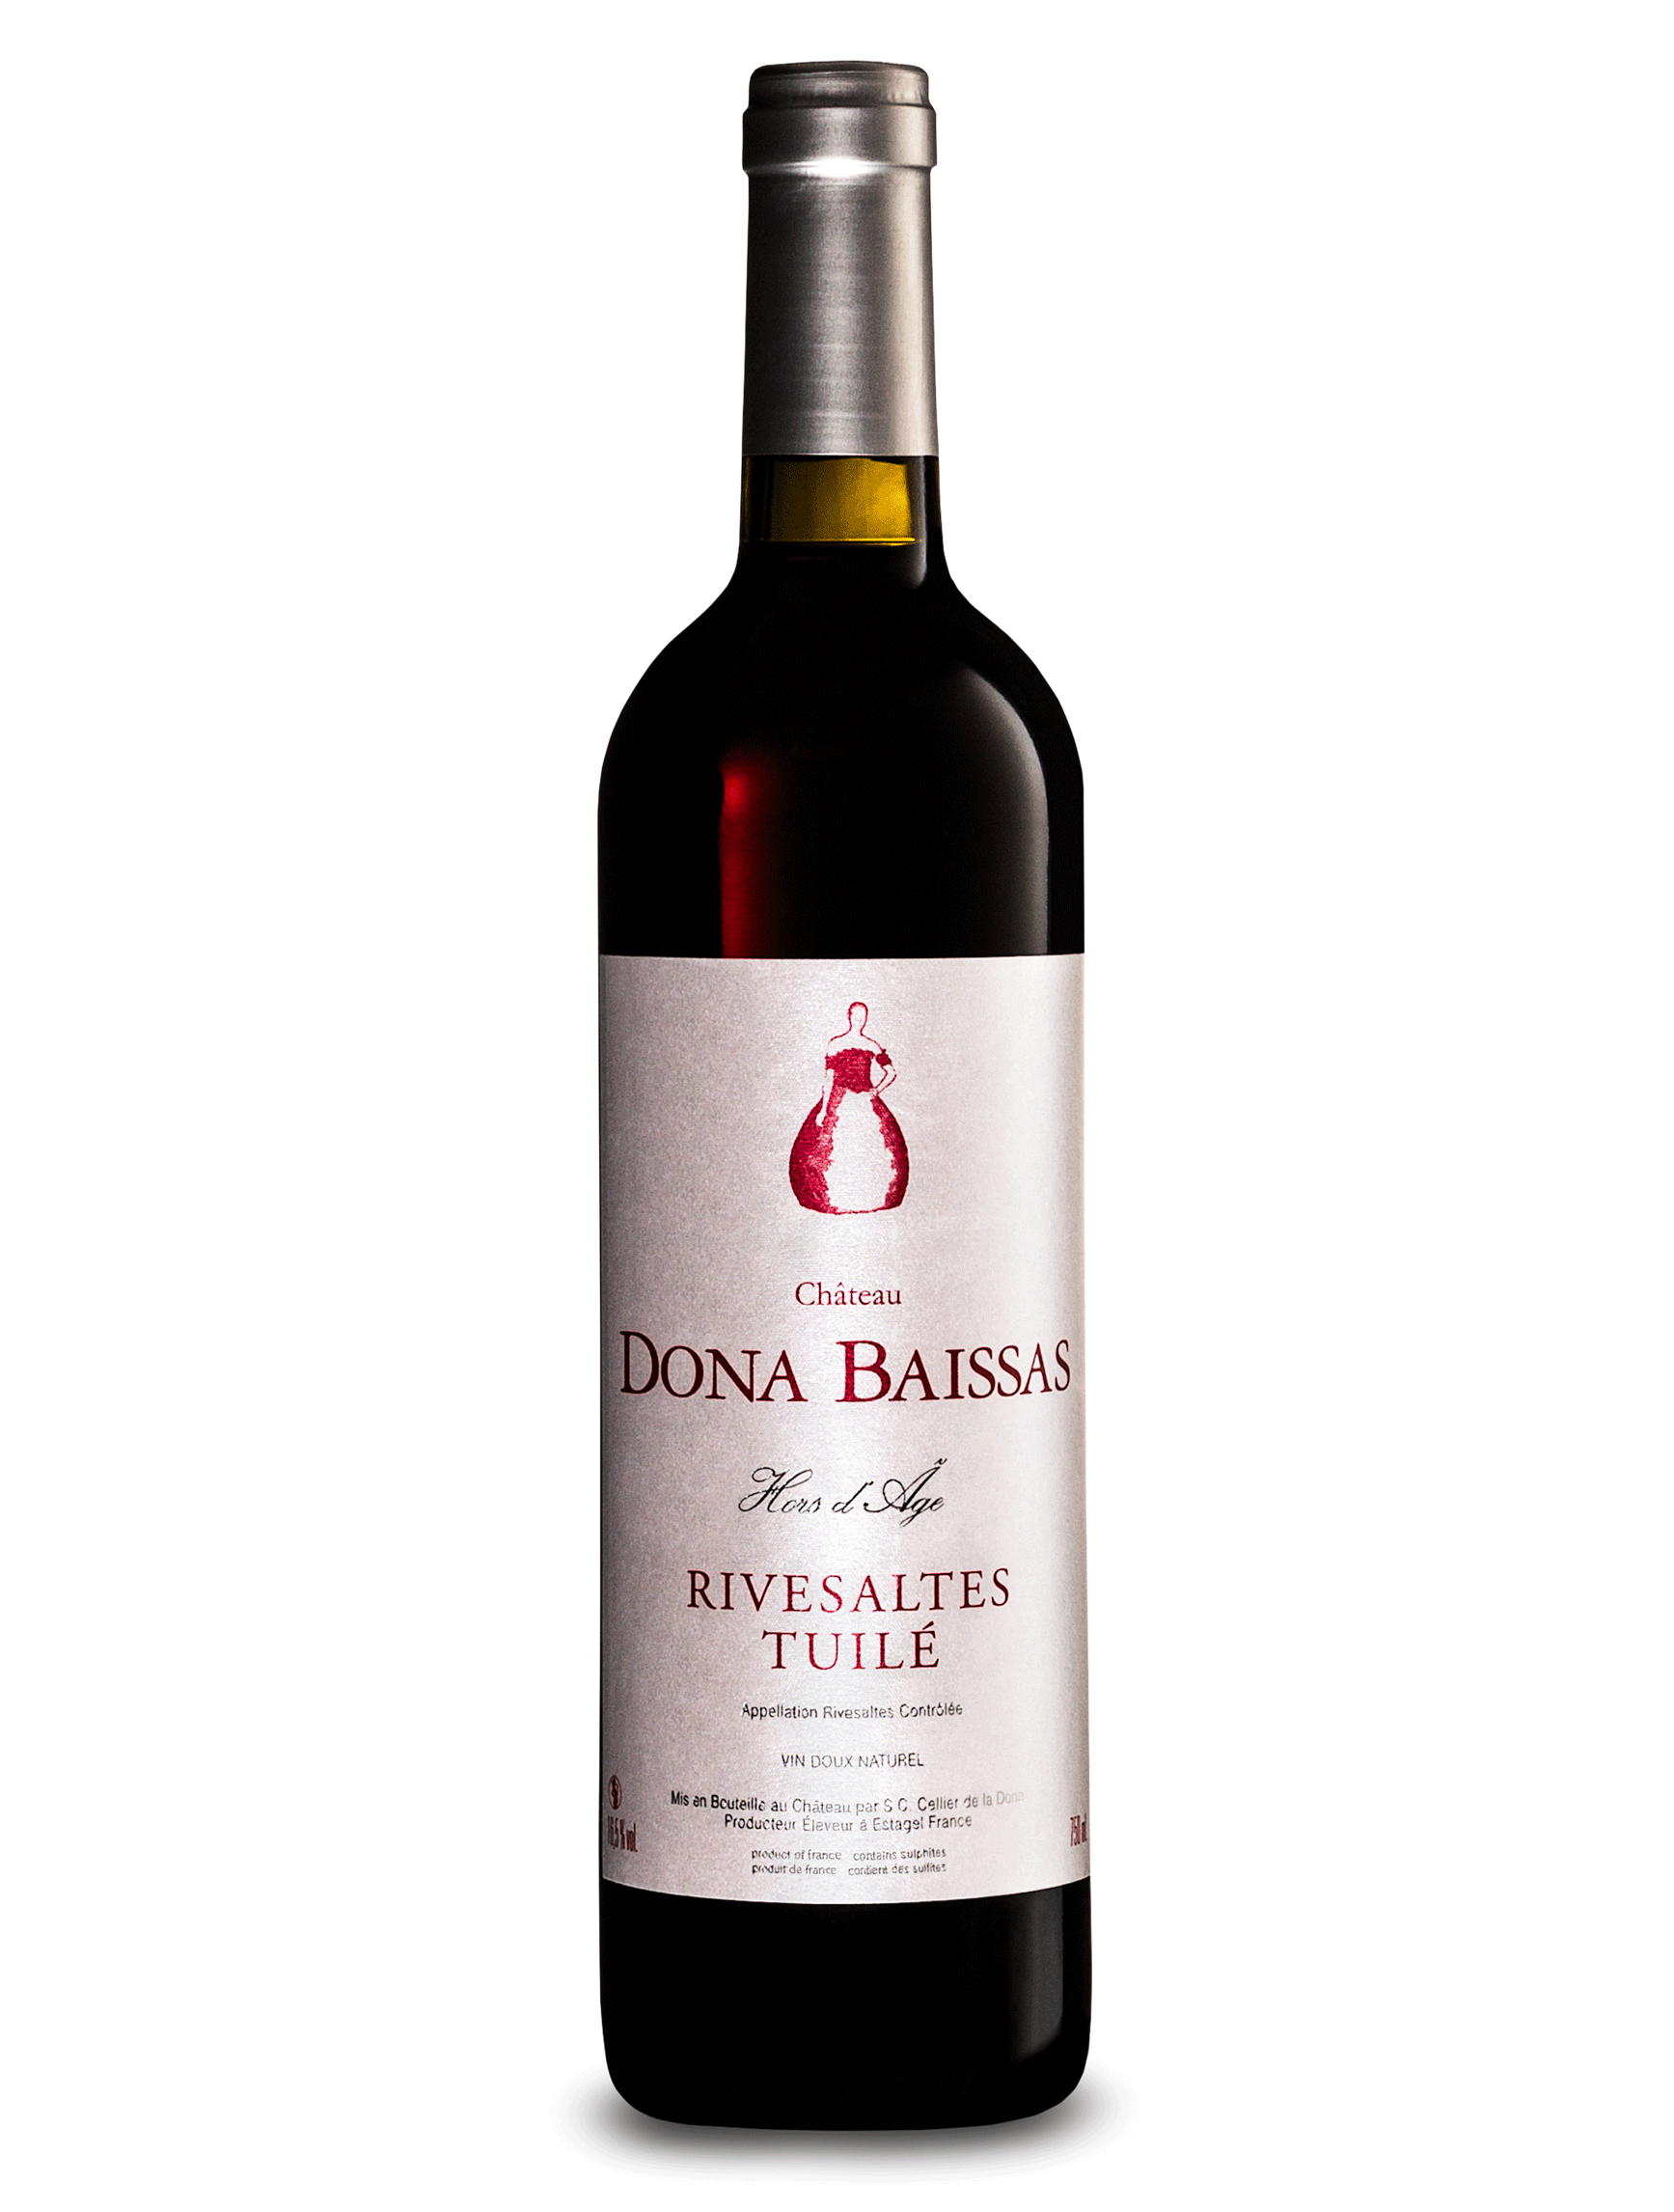 朵娜贝尔萨酒庄加强型红葡萄酒 2008